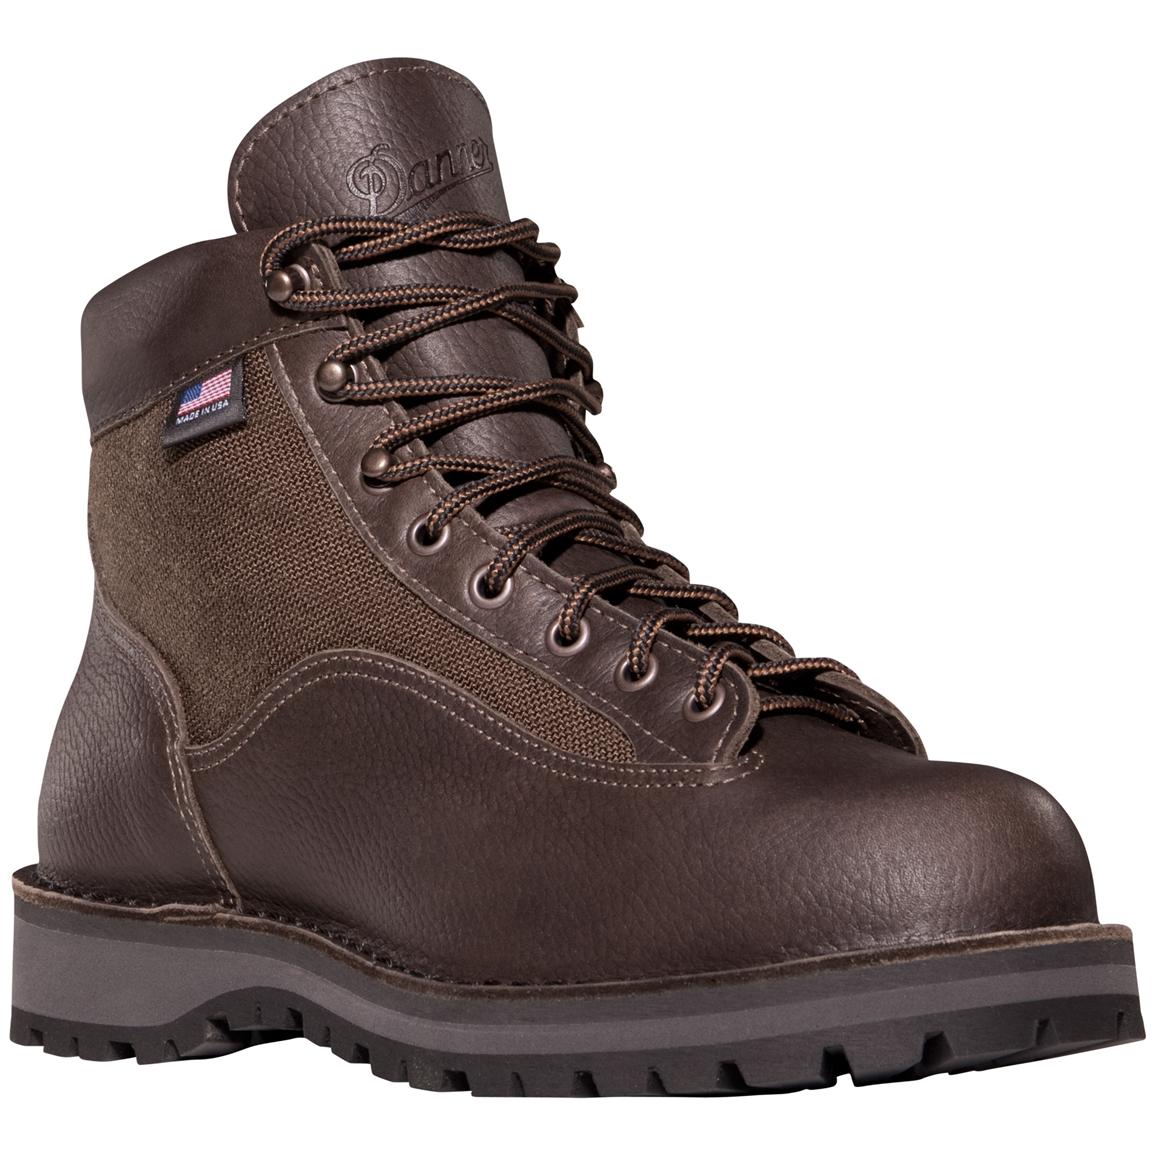 Danner Men's Light II Hiking Boots, Dark Brown